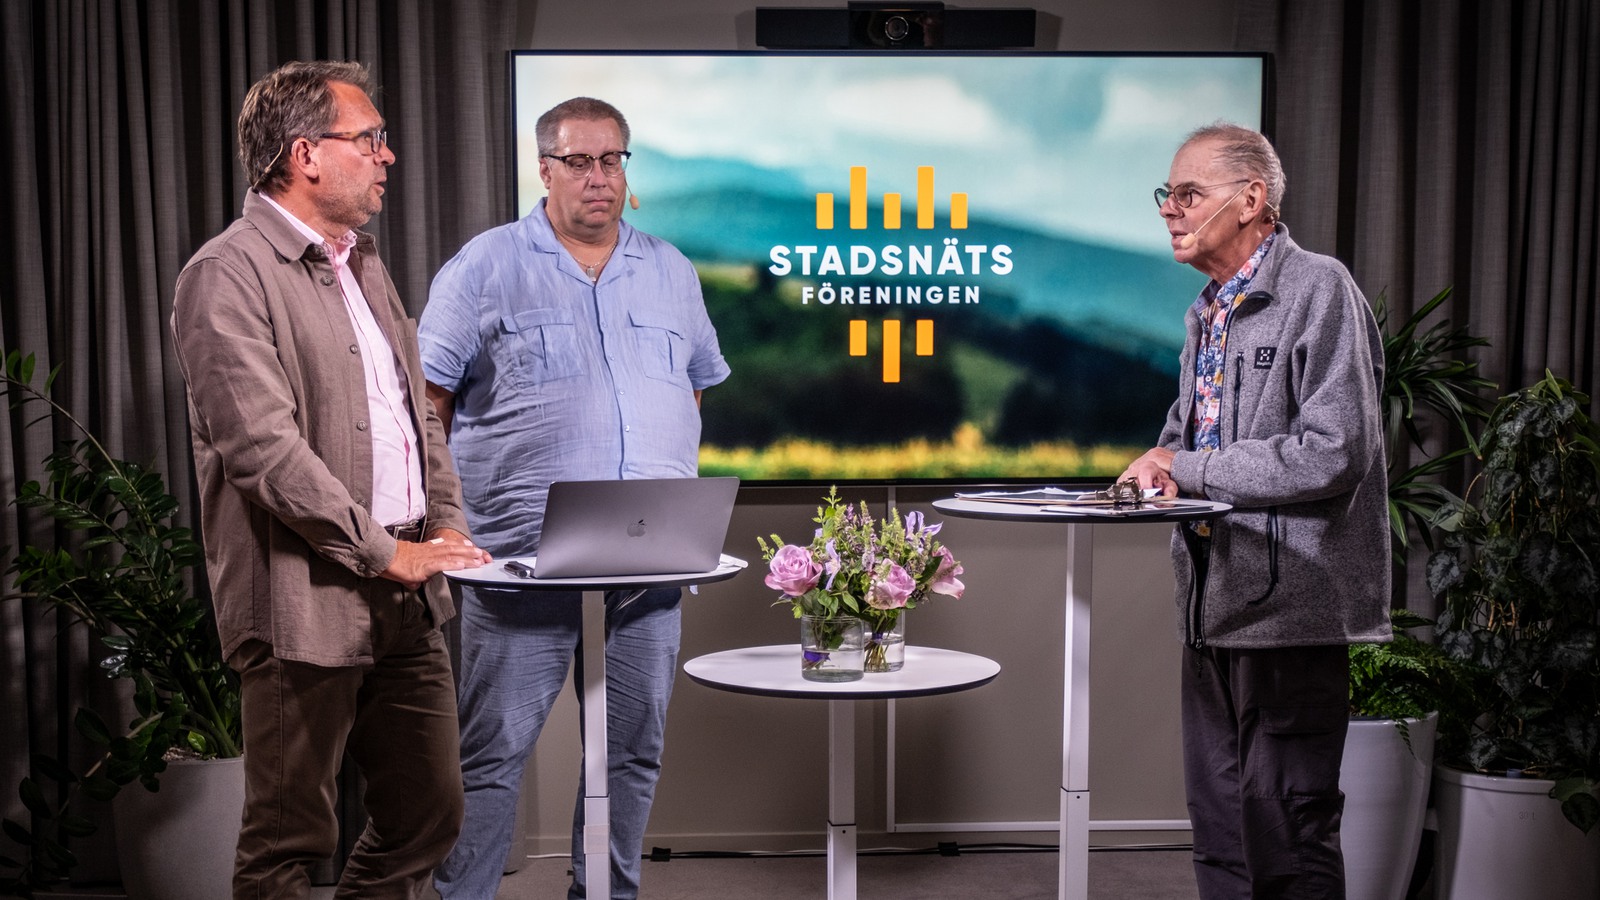 Mikael Ek och Jimmy Persson från Svenska Stadsnätsföreningen tillsammans med moderator samtalar med moderator Willy Silberstein.